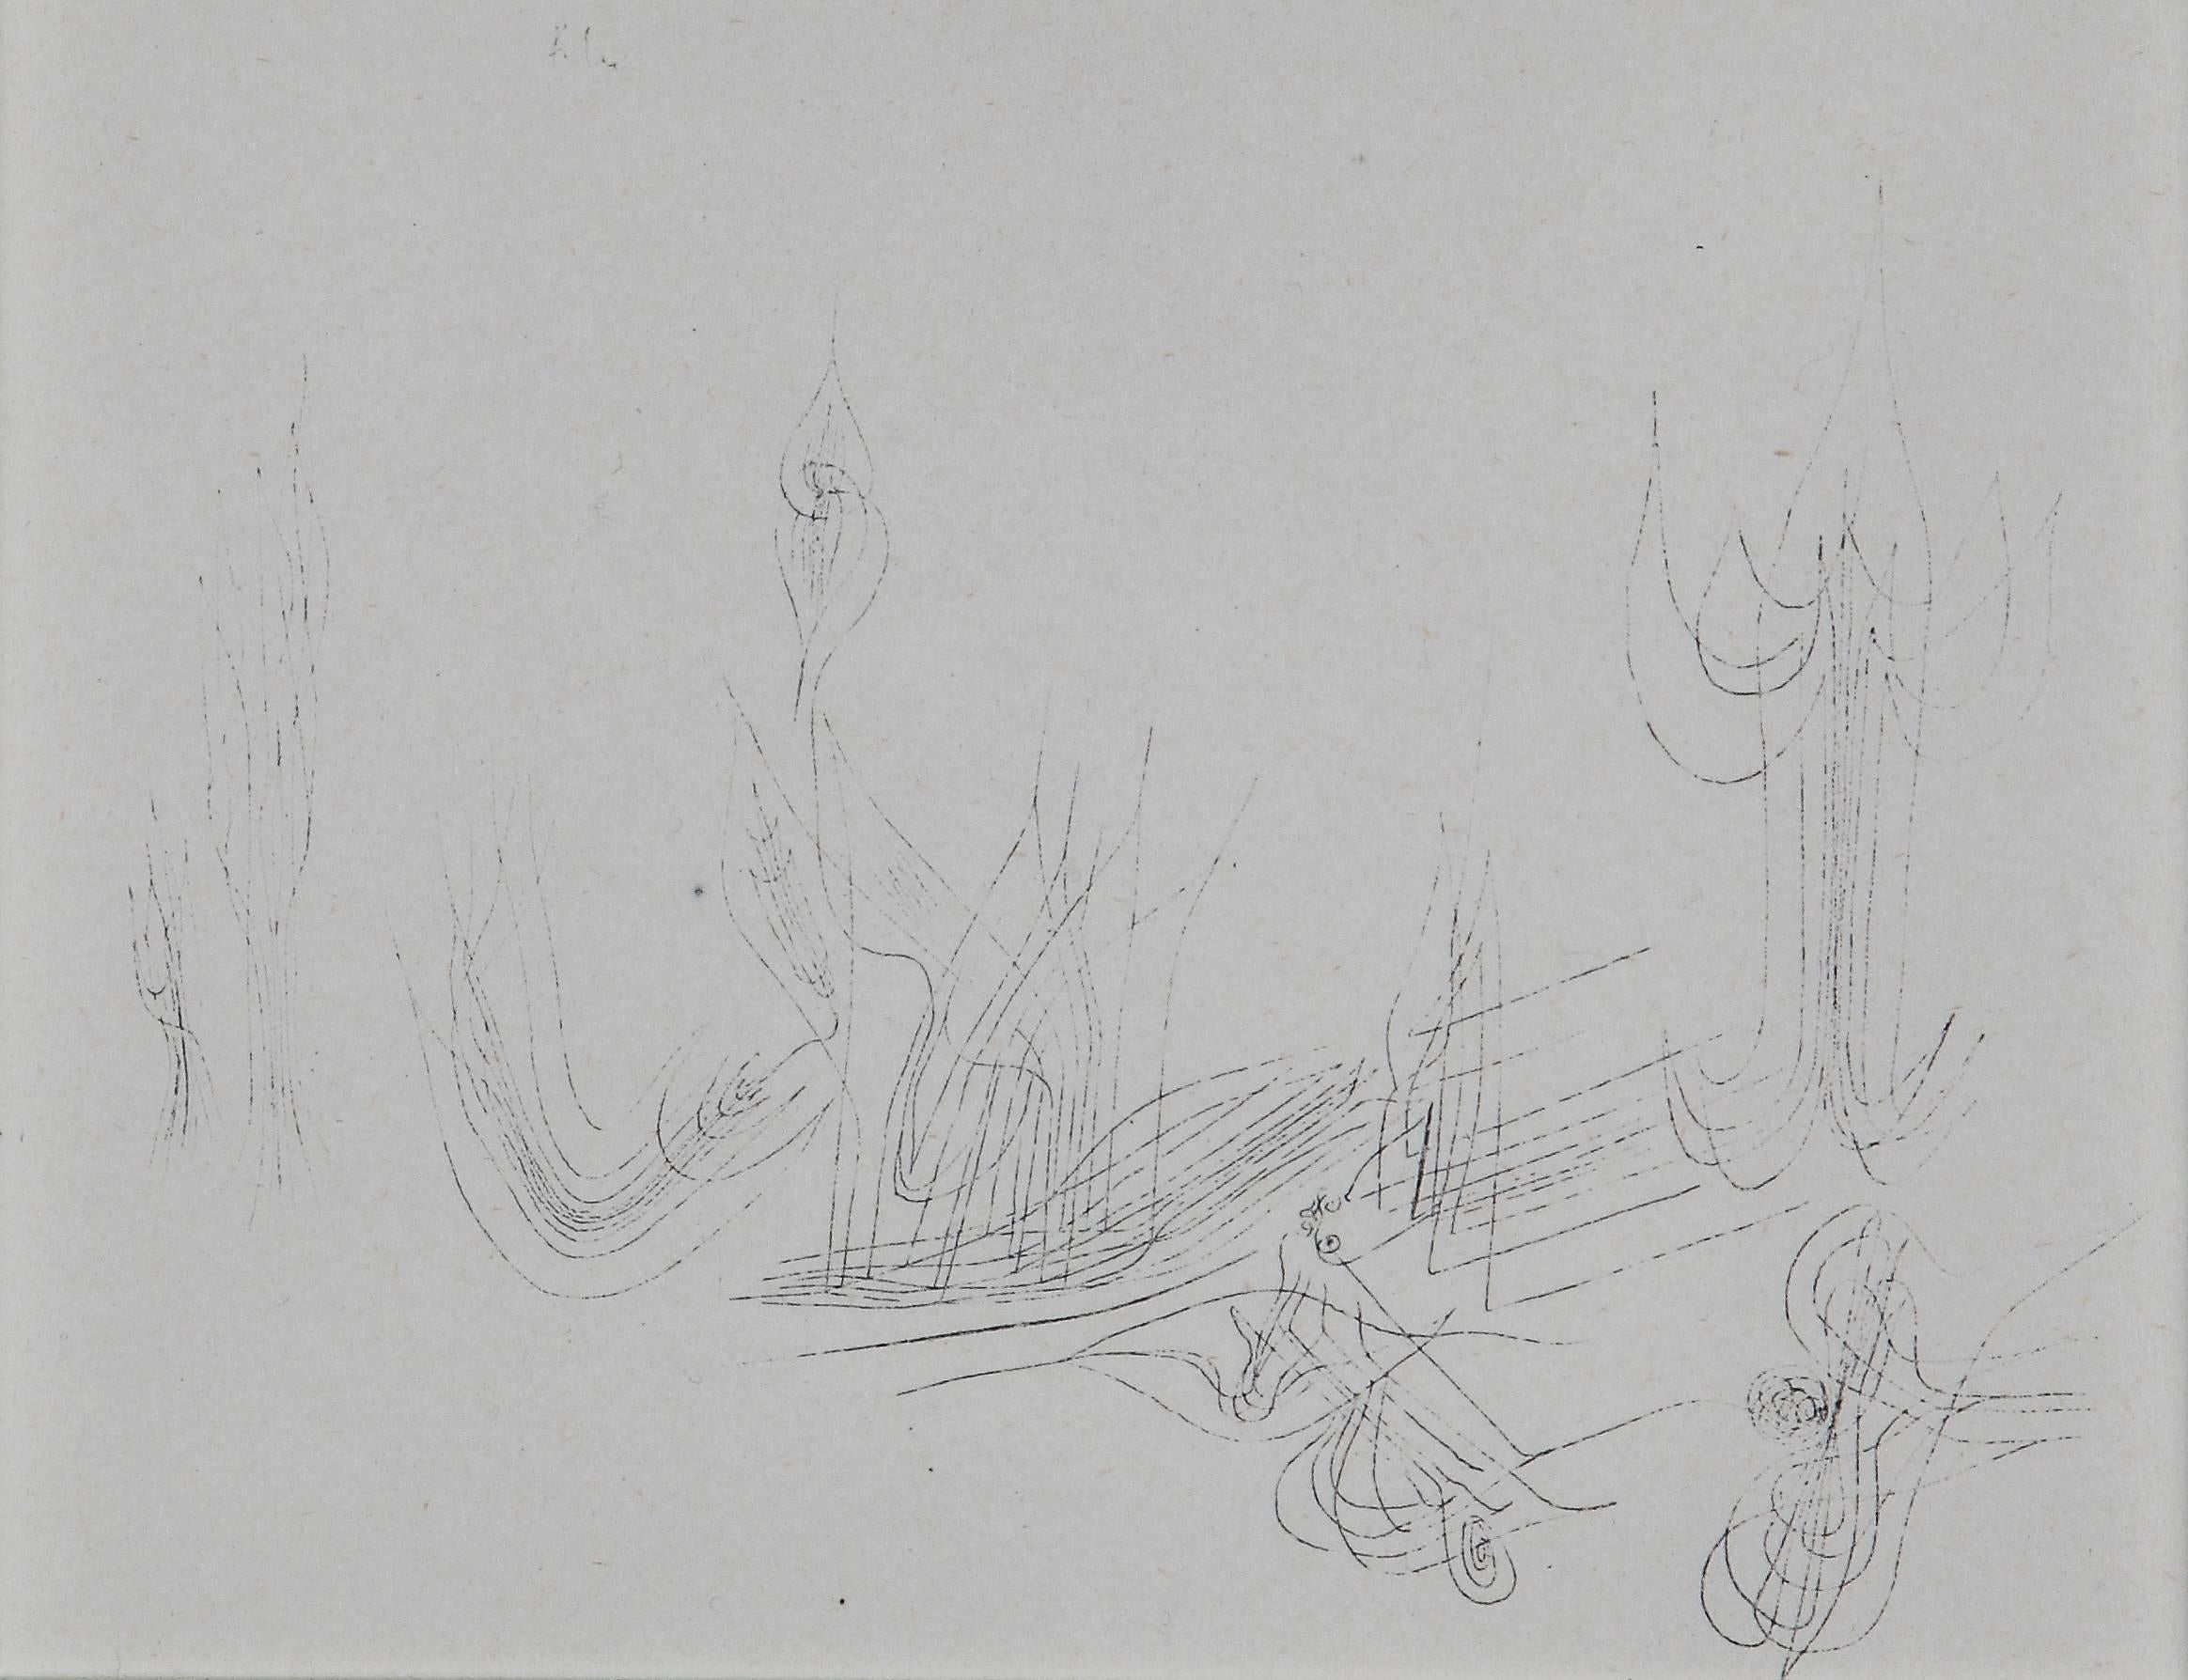 Paul Klee Etching "Stachelströmung zweiten Stadiums"